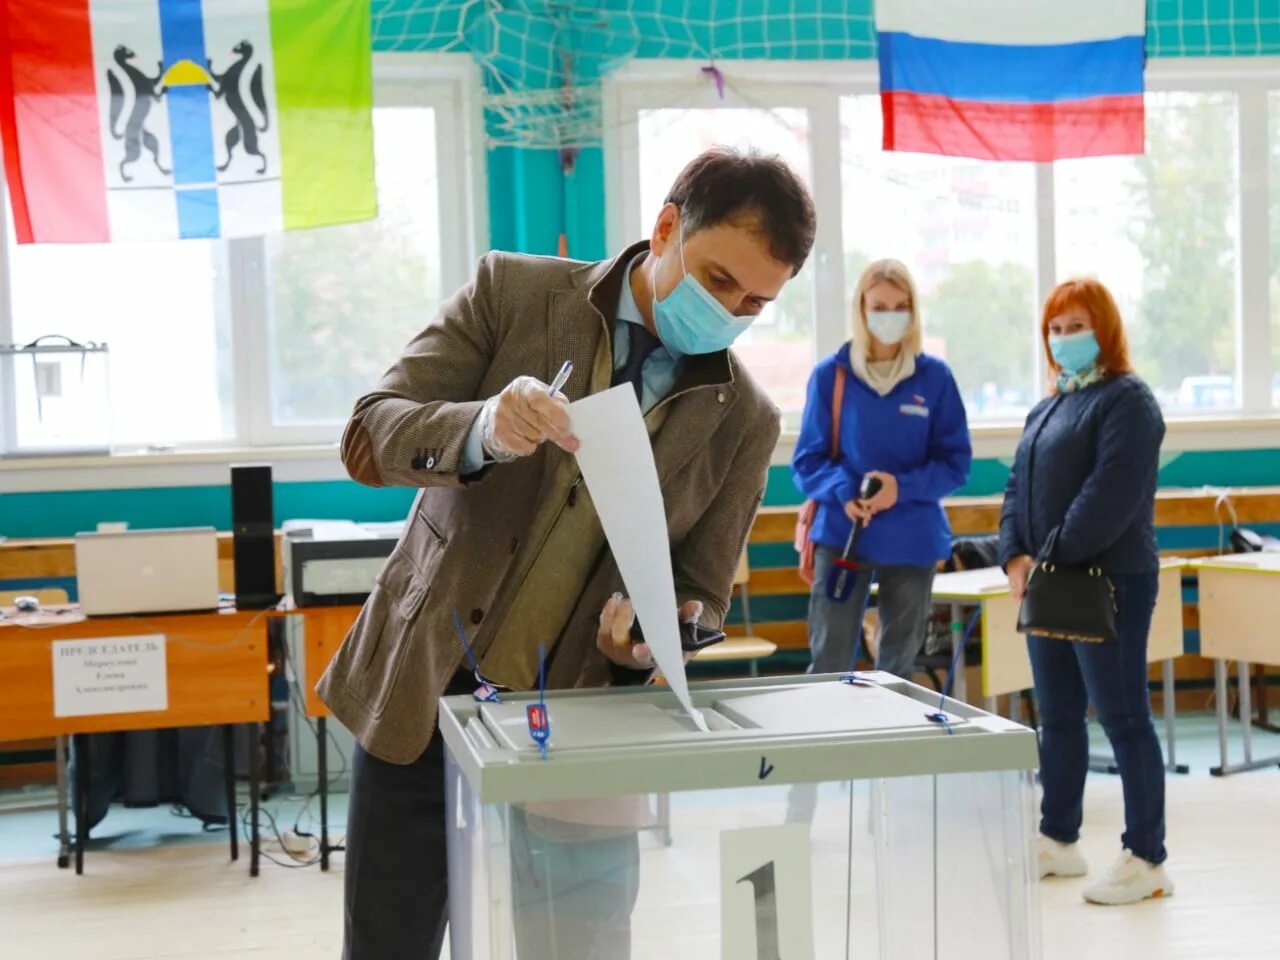 Сегодня первый день голосования. Единый день голосования Новосибирская область. Люди на избирательном участке. Активности на избирательных участках. Избирательное право фото.